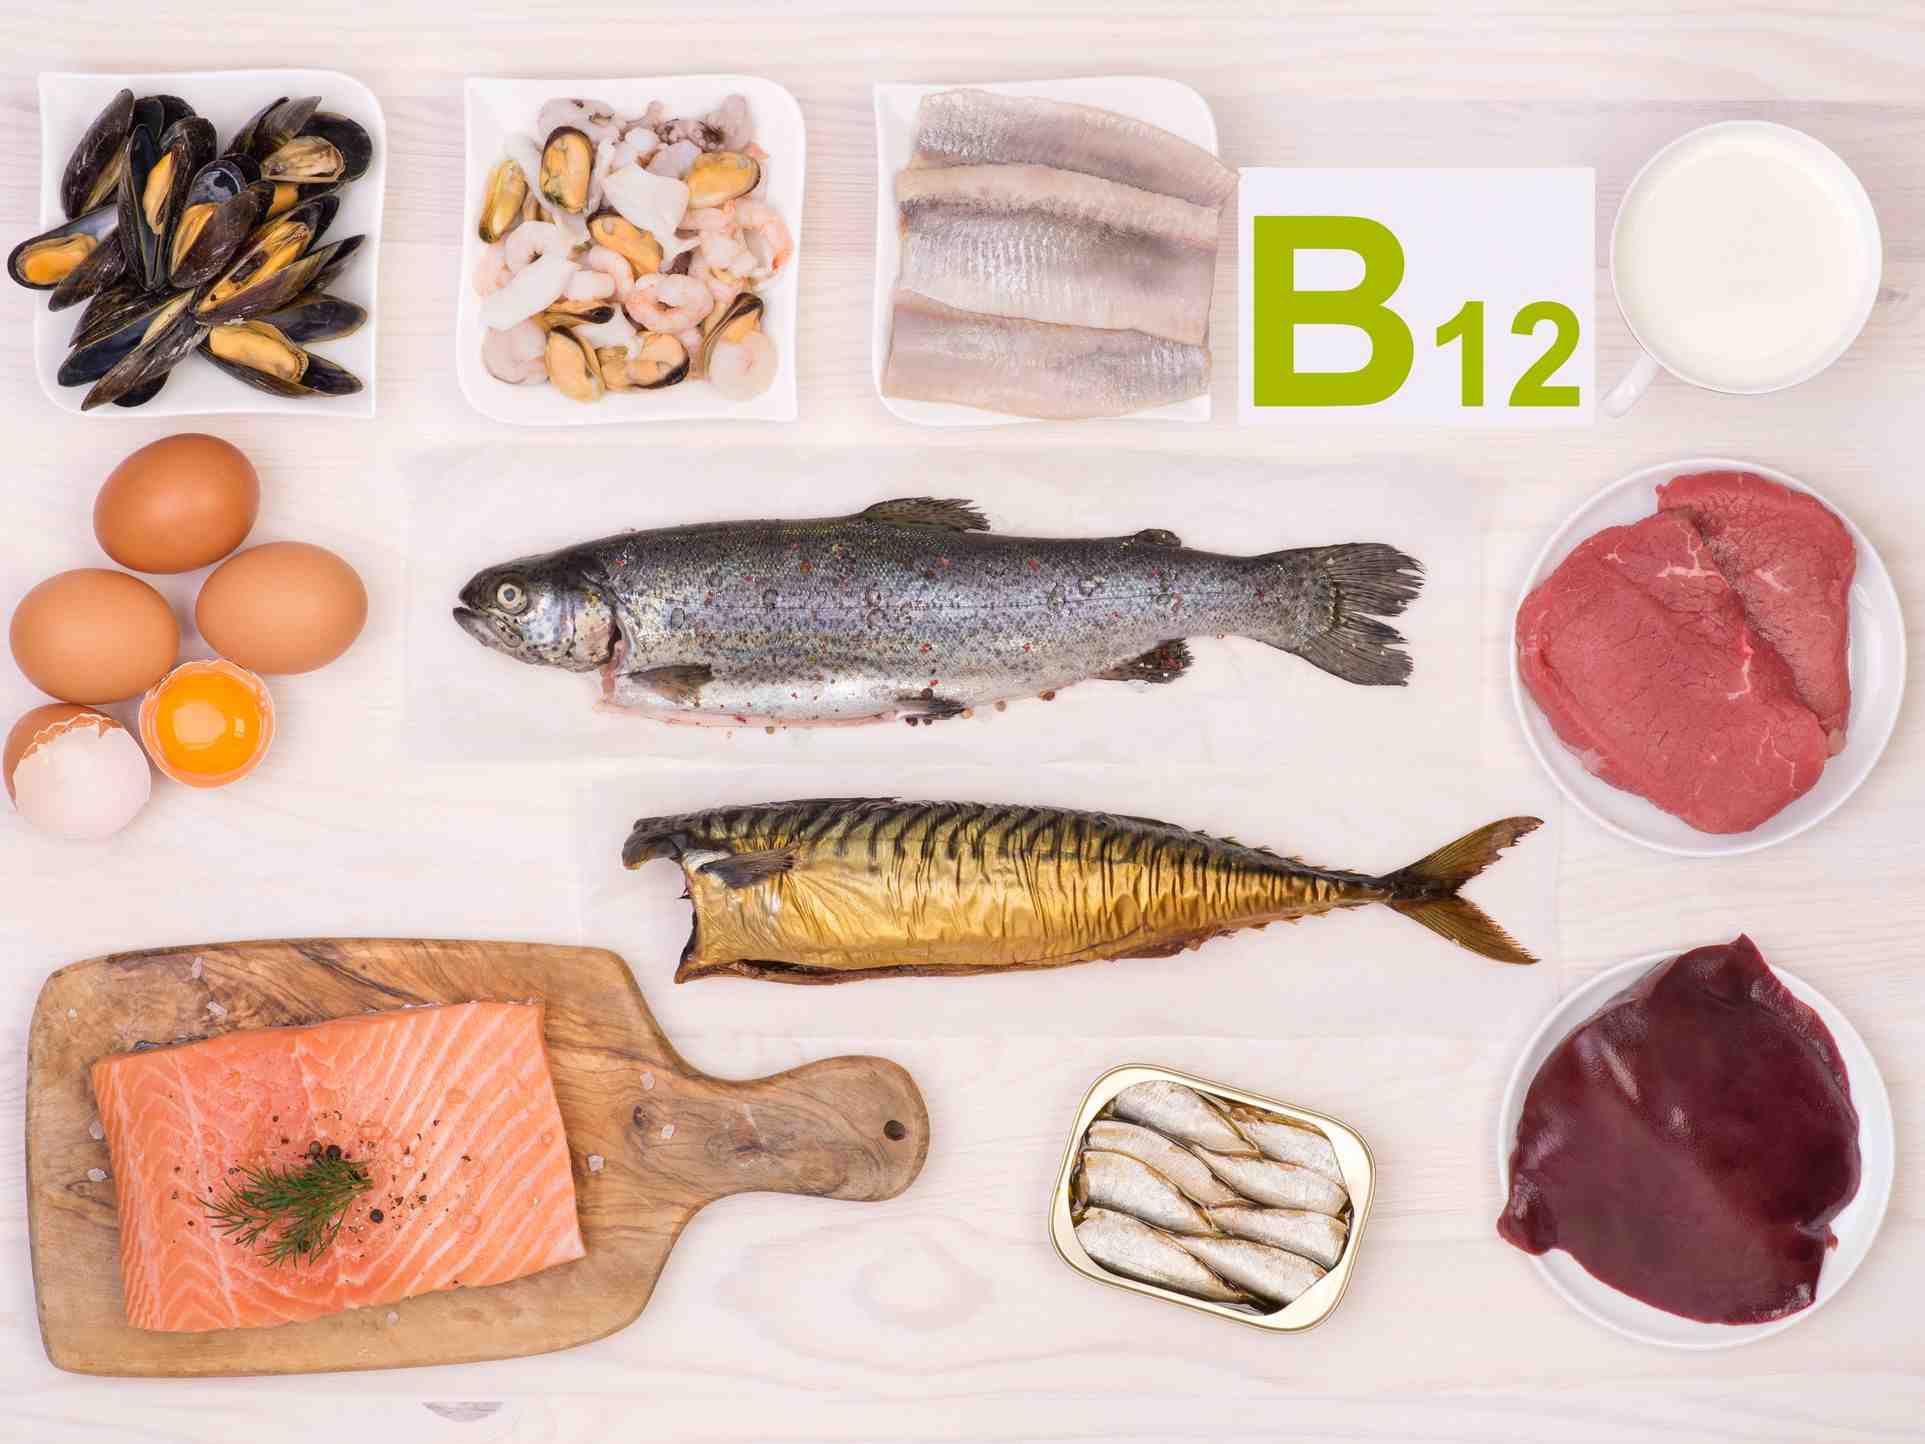 Comment prendre de la vitamine B12 ?